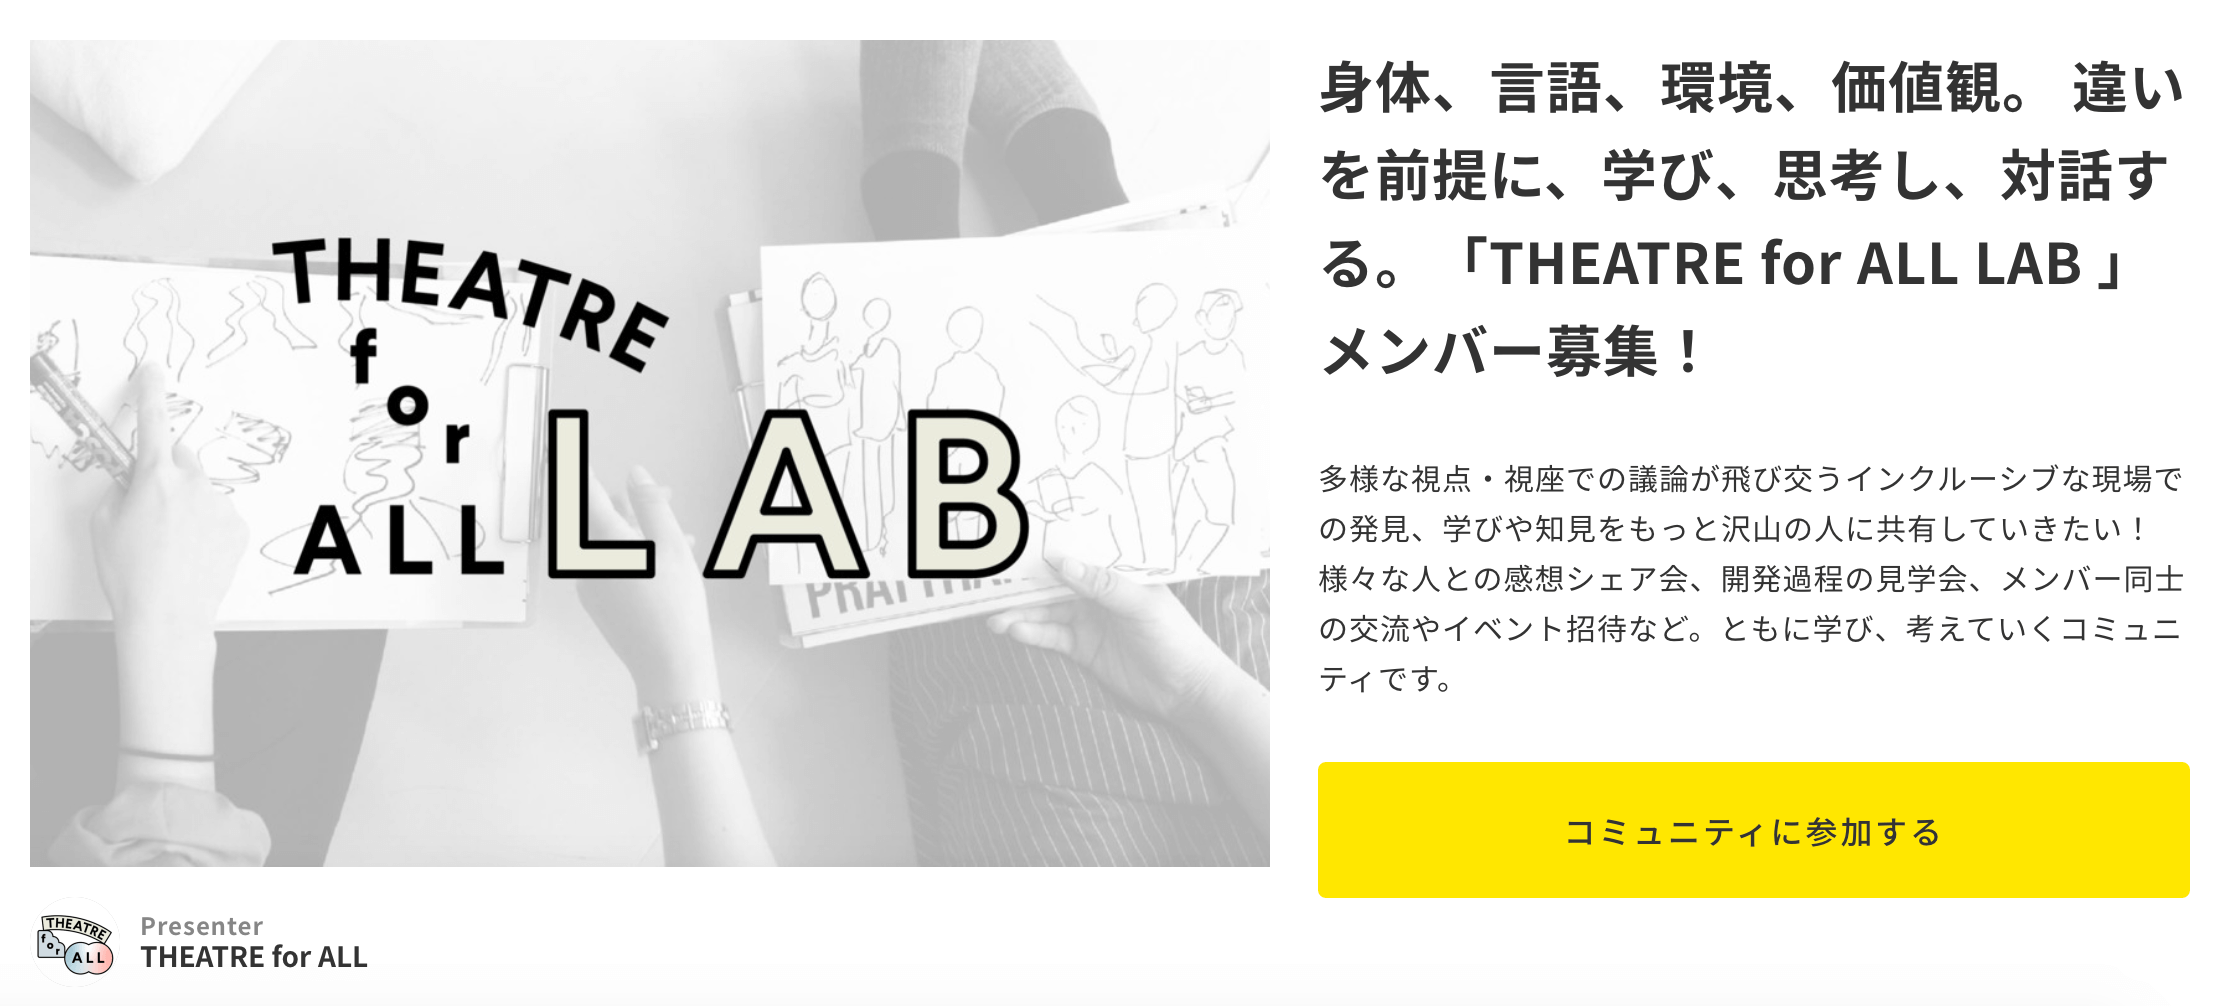 「THEATRE for ALL LAB」のメンバー募集を行っている、ウェブページの画像です。LABの説明とともに、「コミュニティに参加する」と書かれた大きな黄色いボタンが設置されています